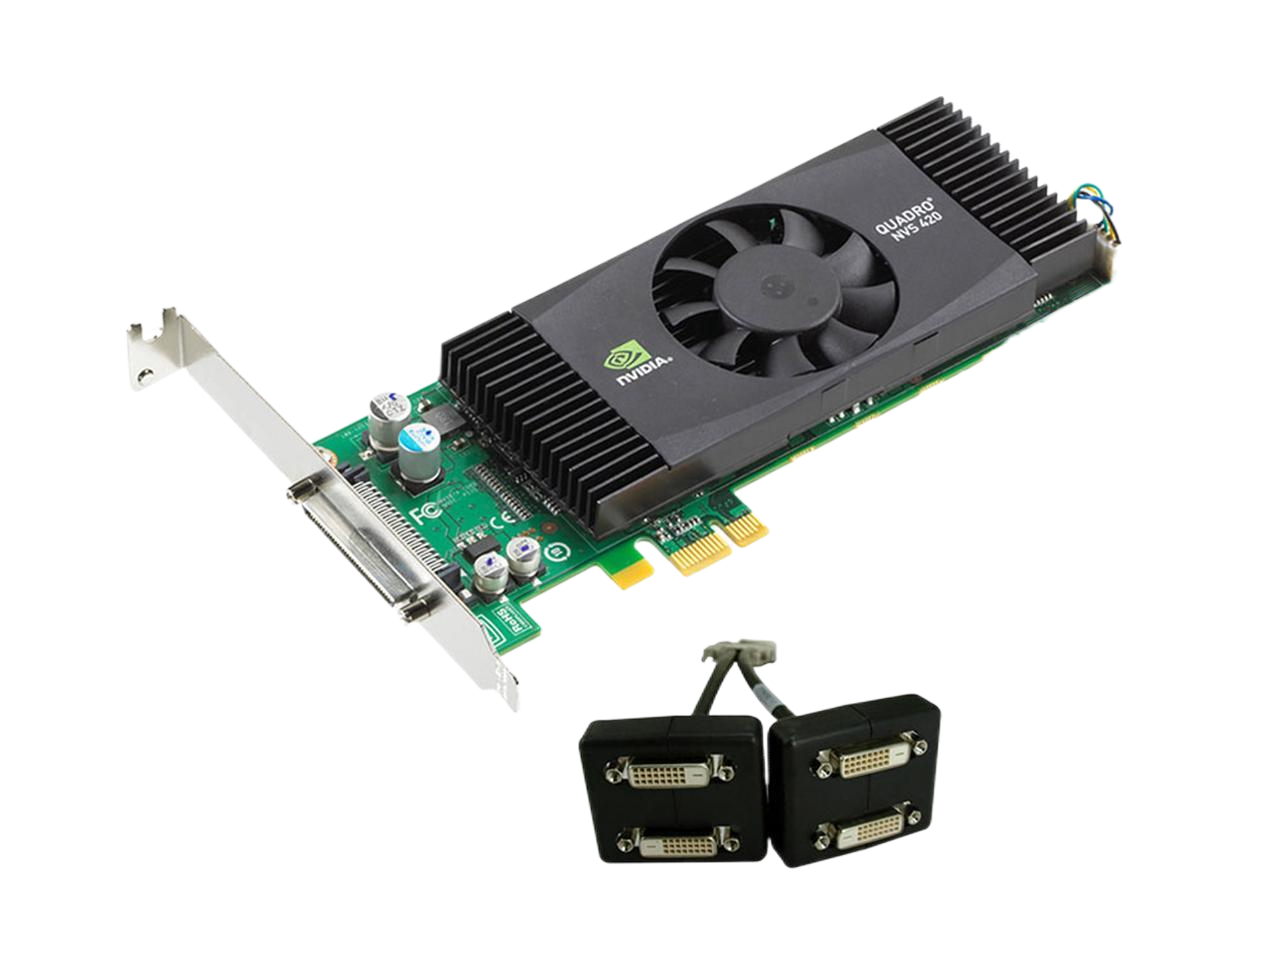 PNY Quadro NVS 420 512MB (256MB per GPU) 128-bit (64-bit per GPU) GDDR3 PCI Express x1 Low Profile Workstation Video Card VCQ420NVS-X1-DVI-PB